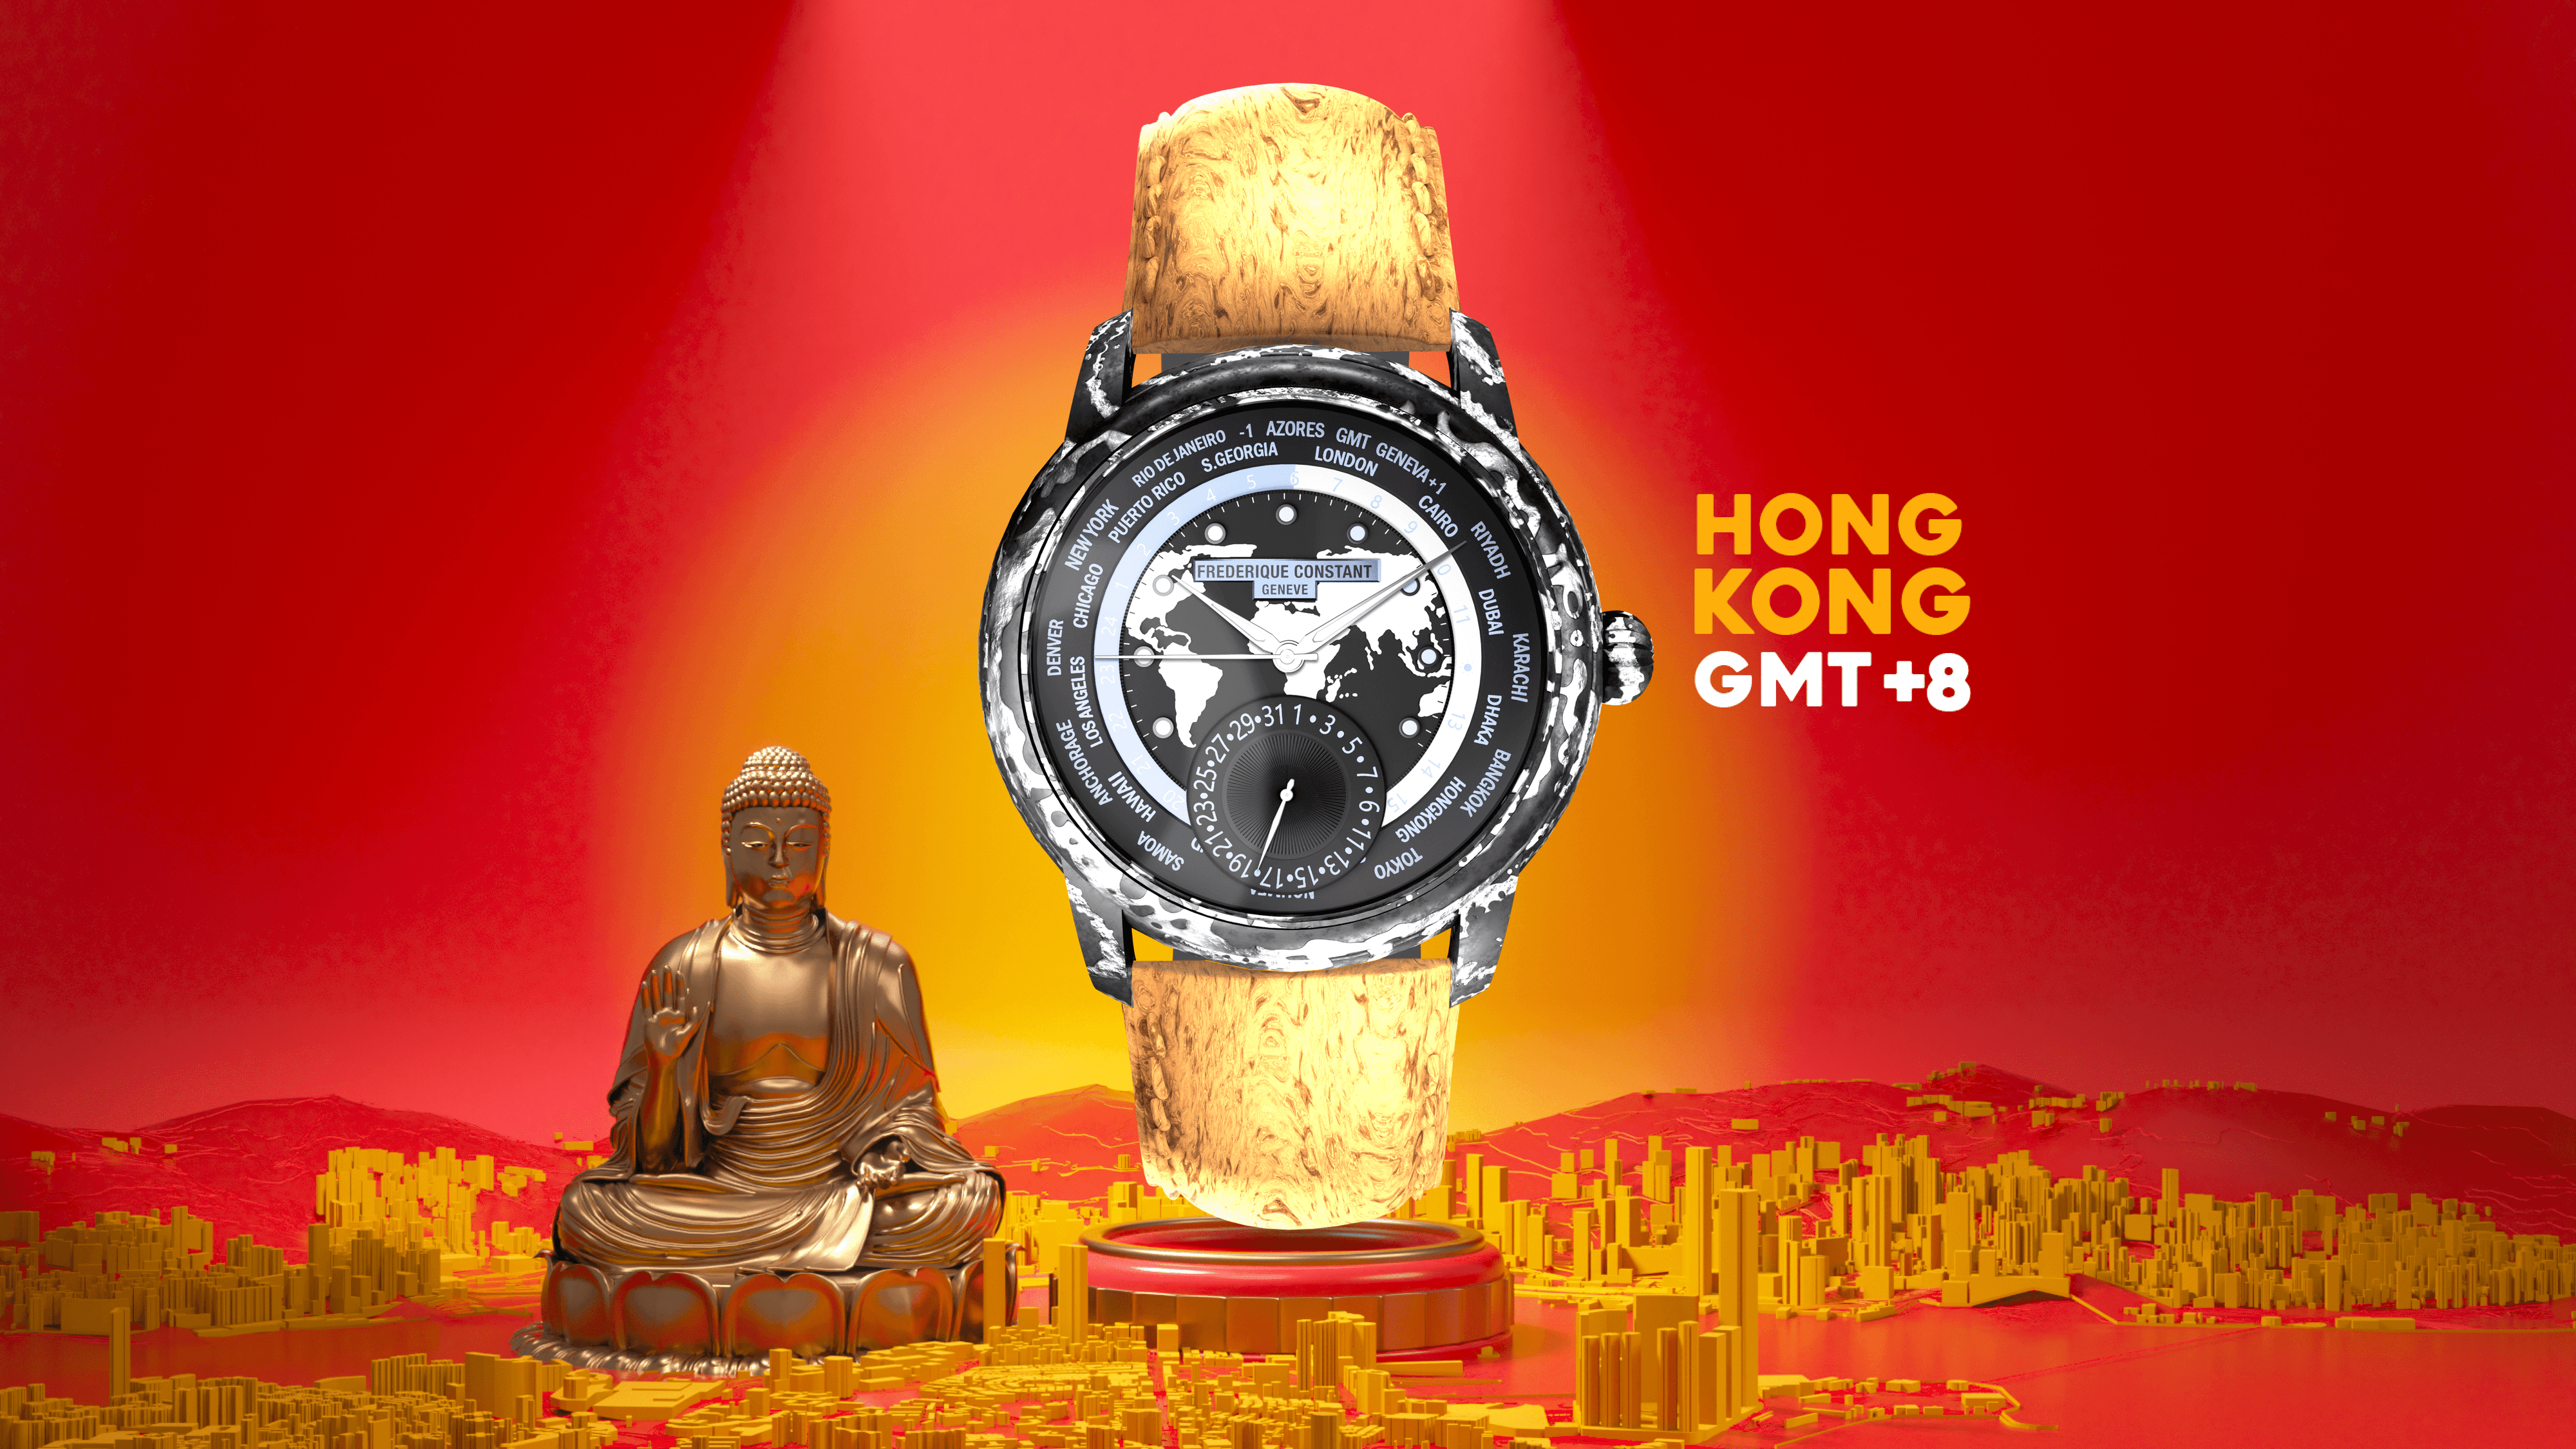 Worldtimer #341 - Hong Kong (GMT+8)